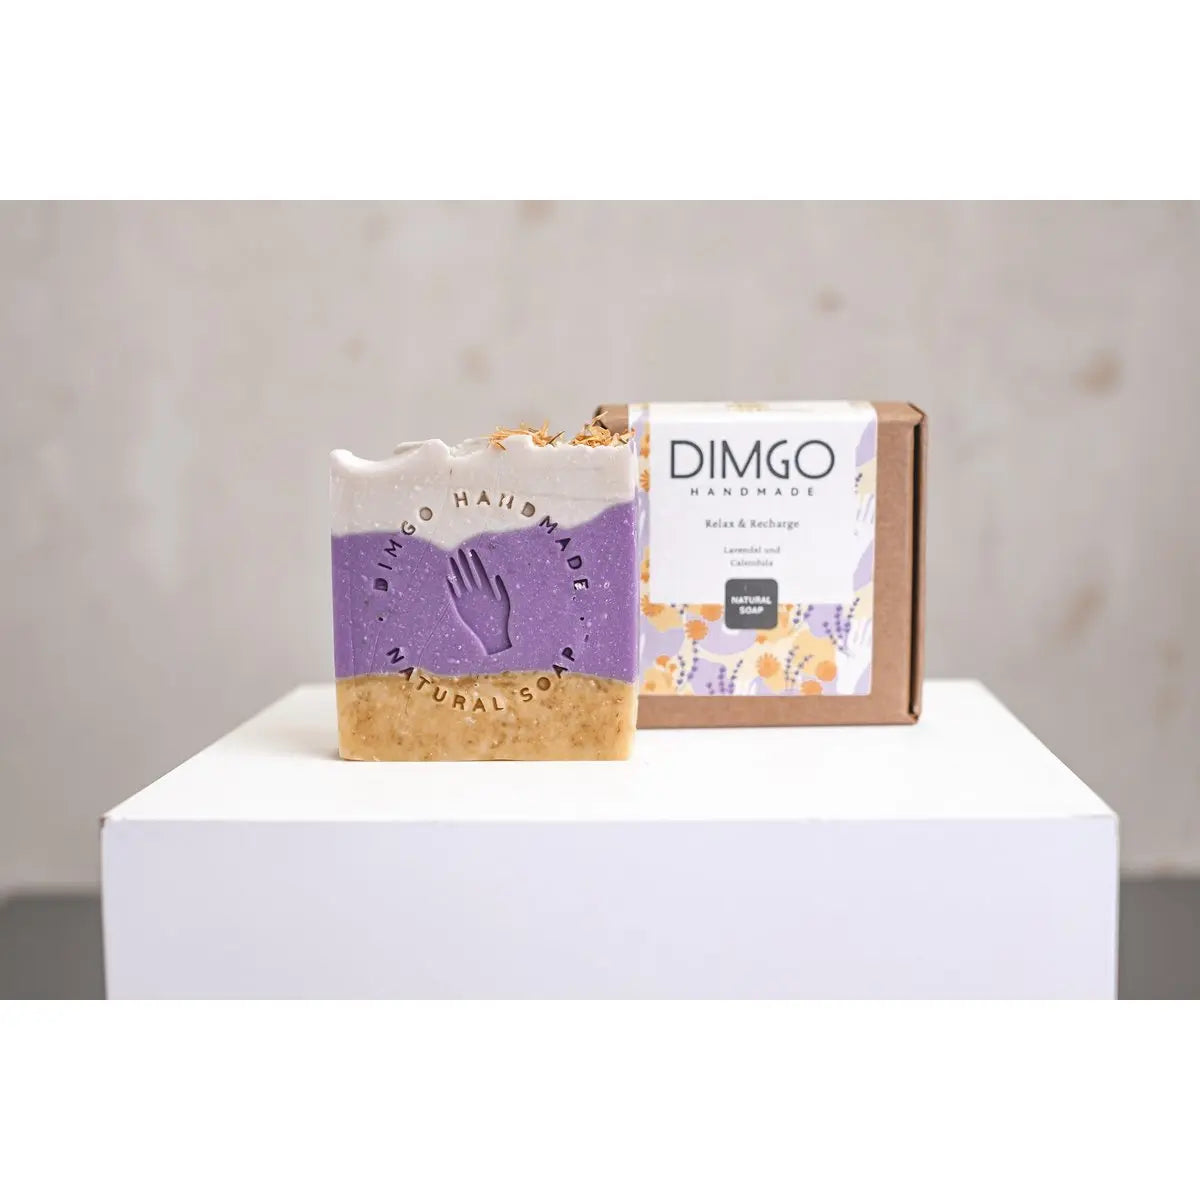 Dimgo handmade zeepbar ontspannen en opladen handgemaakteskincare